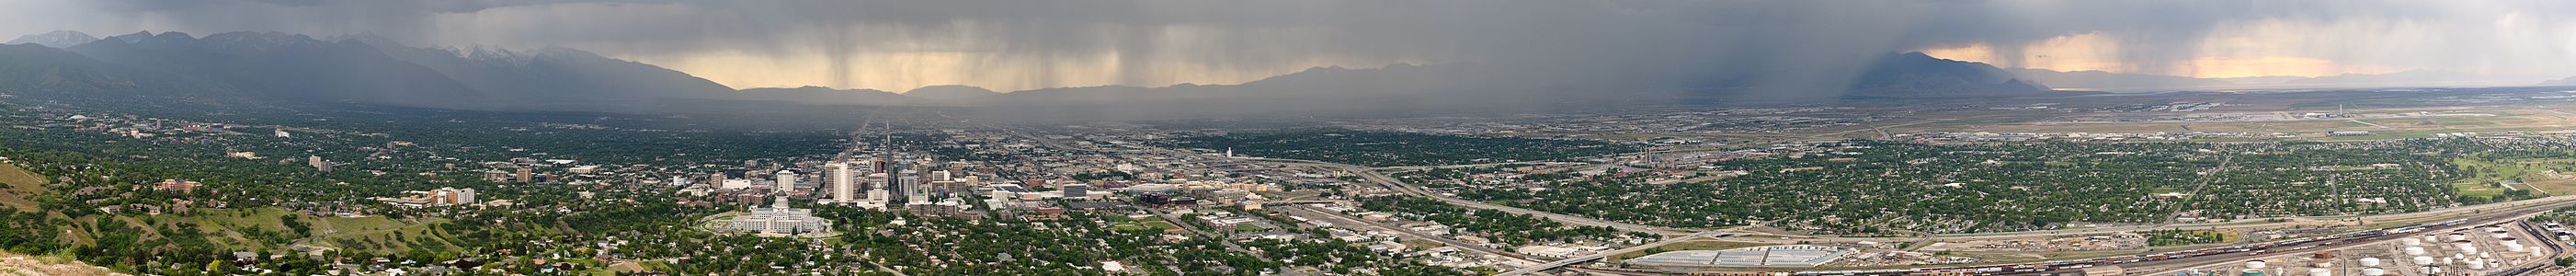 Salt Lake City (Utah, ABD), bir fırtına öncesi.(Üreten:Jonnyapple)